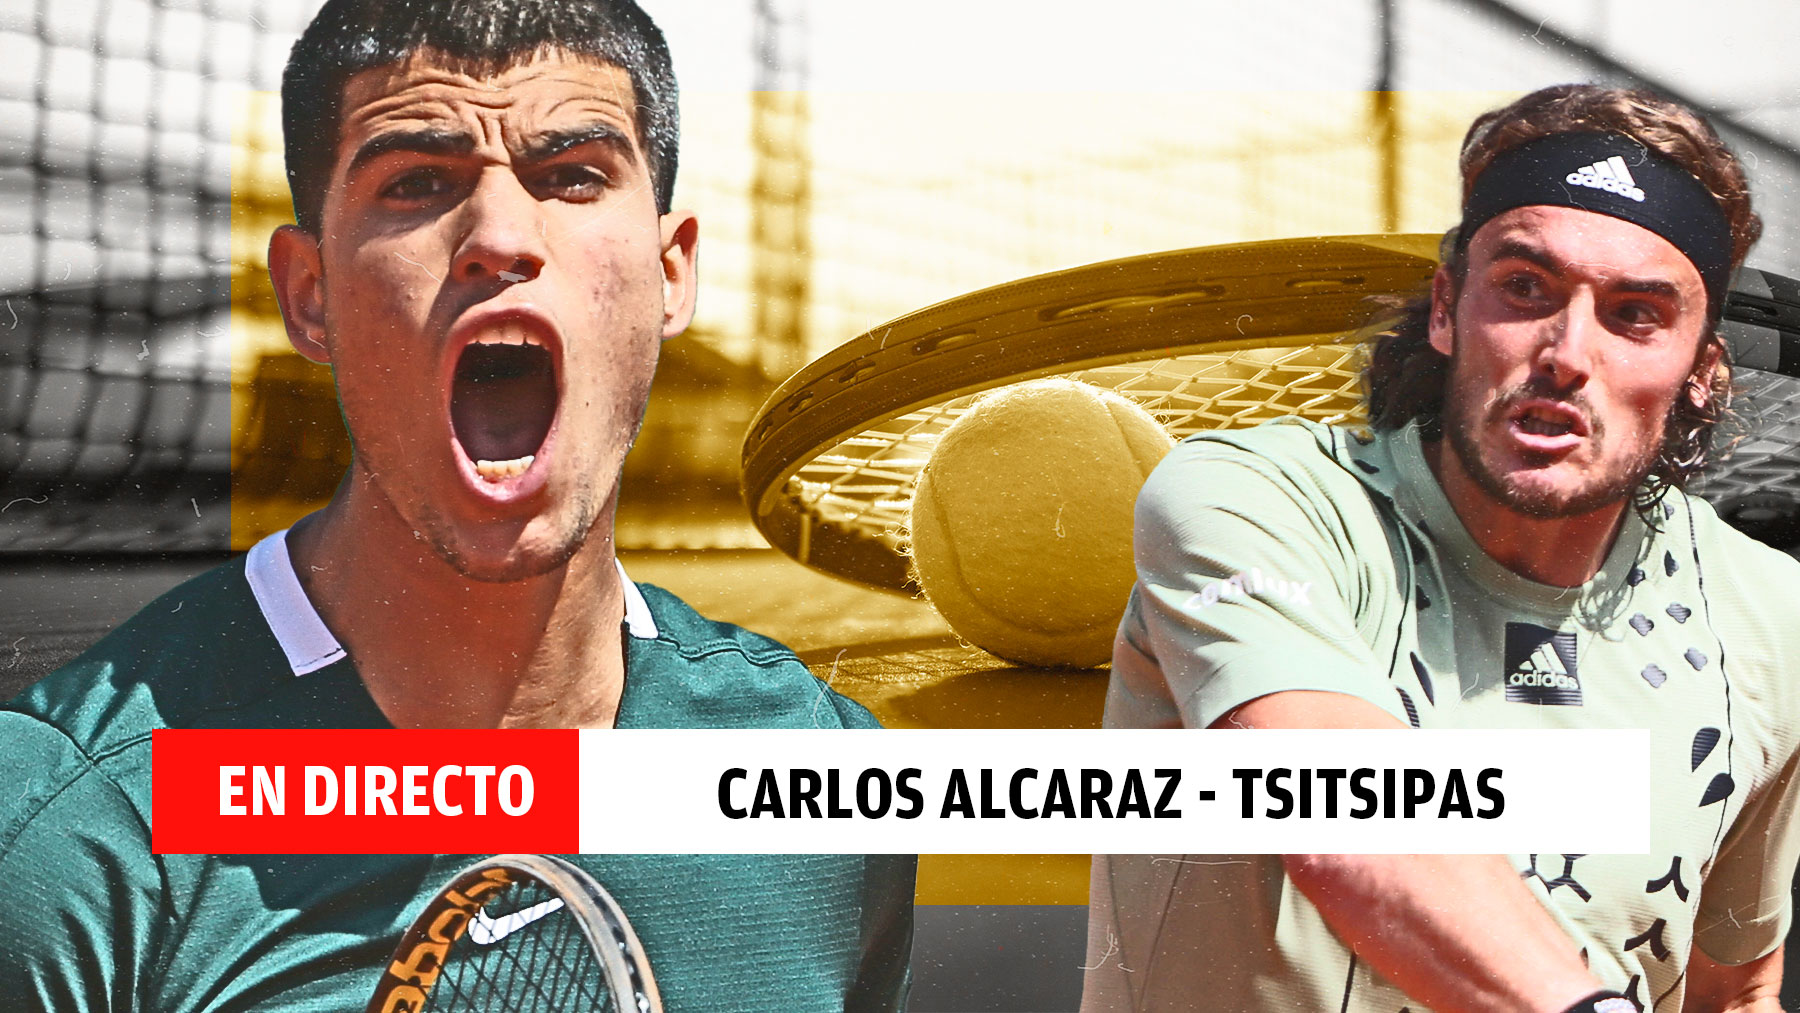 Carlos Alcaraz vs Tsitsipas, en directo